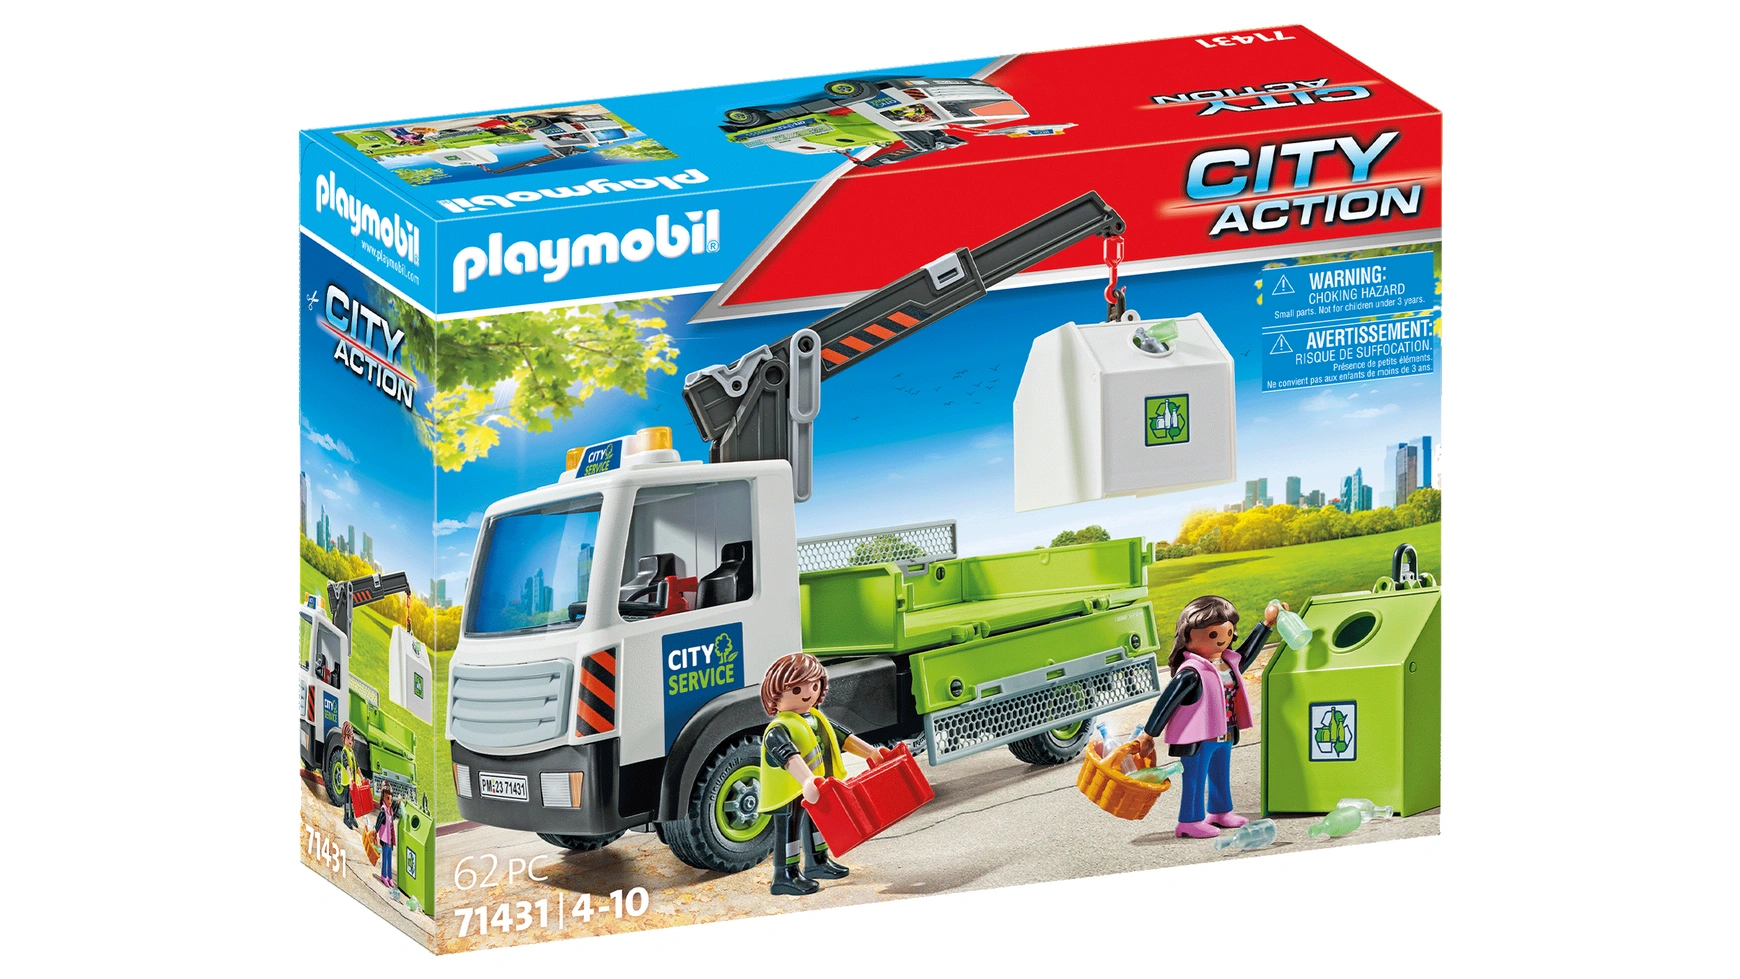 City action грузовик для мусора с контейнером Playmobil city action грузовик для мусора с контейнером playmobil